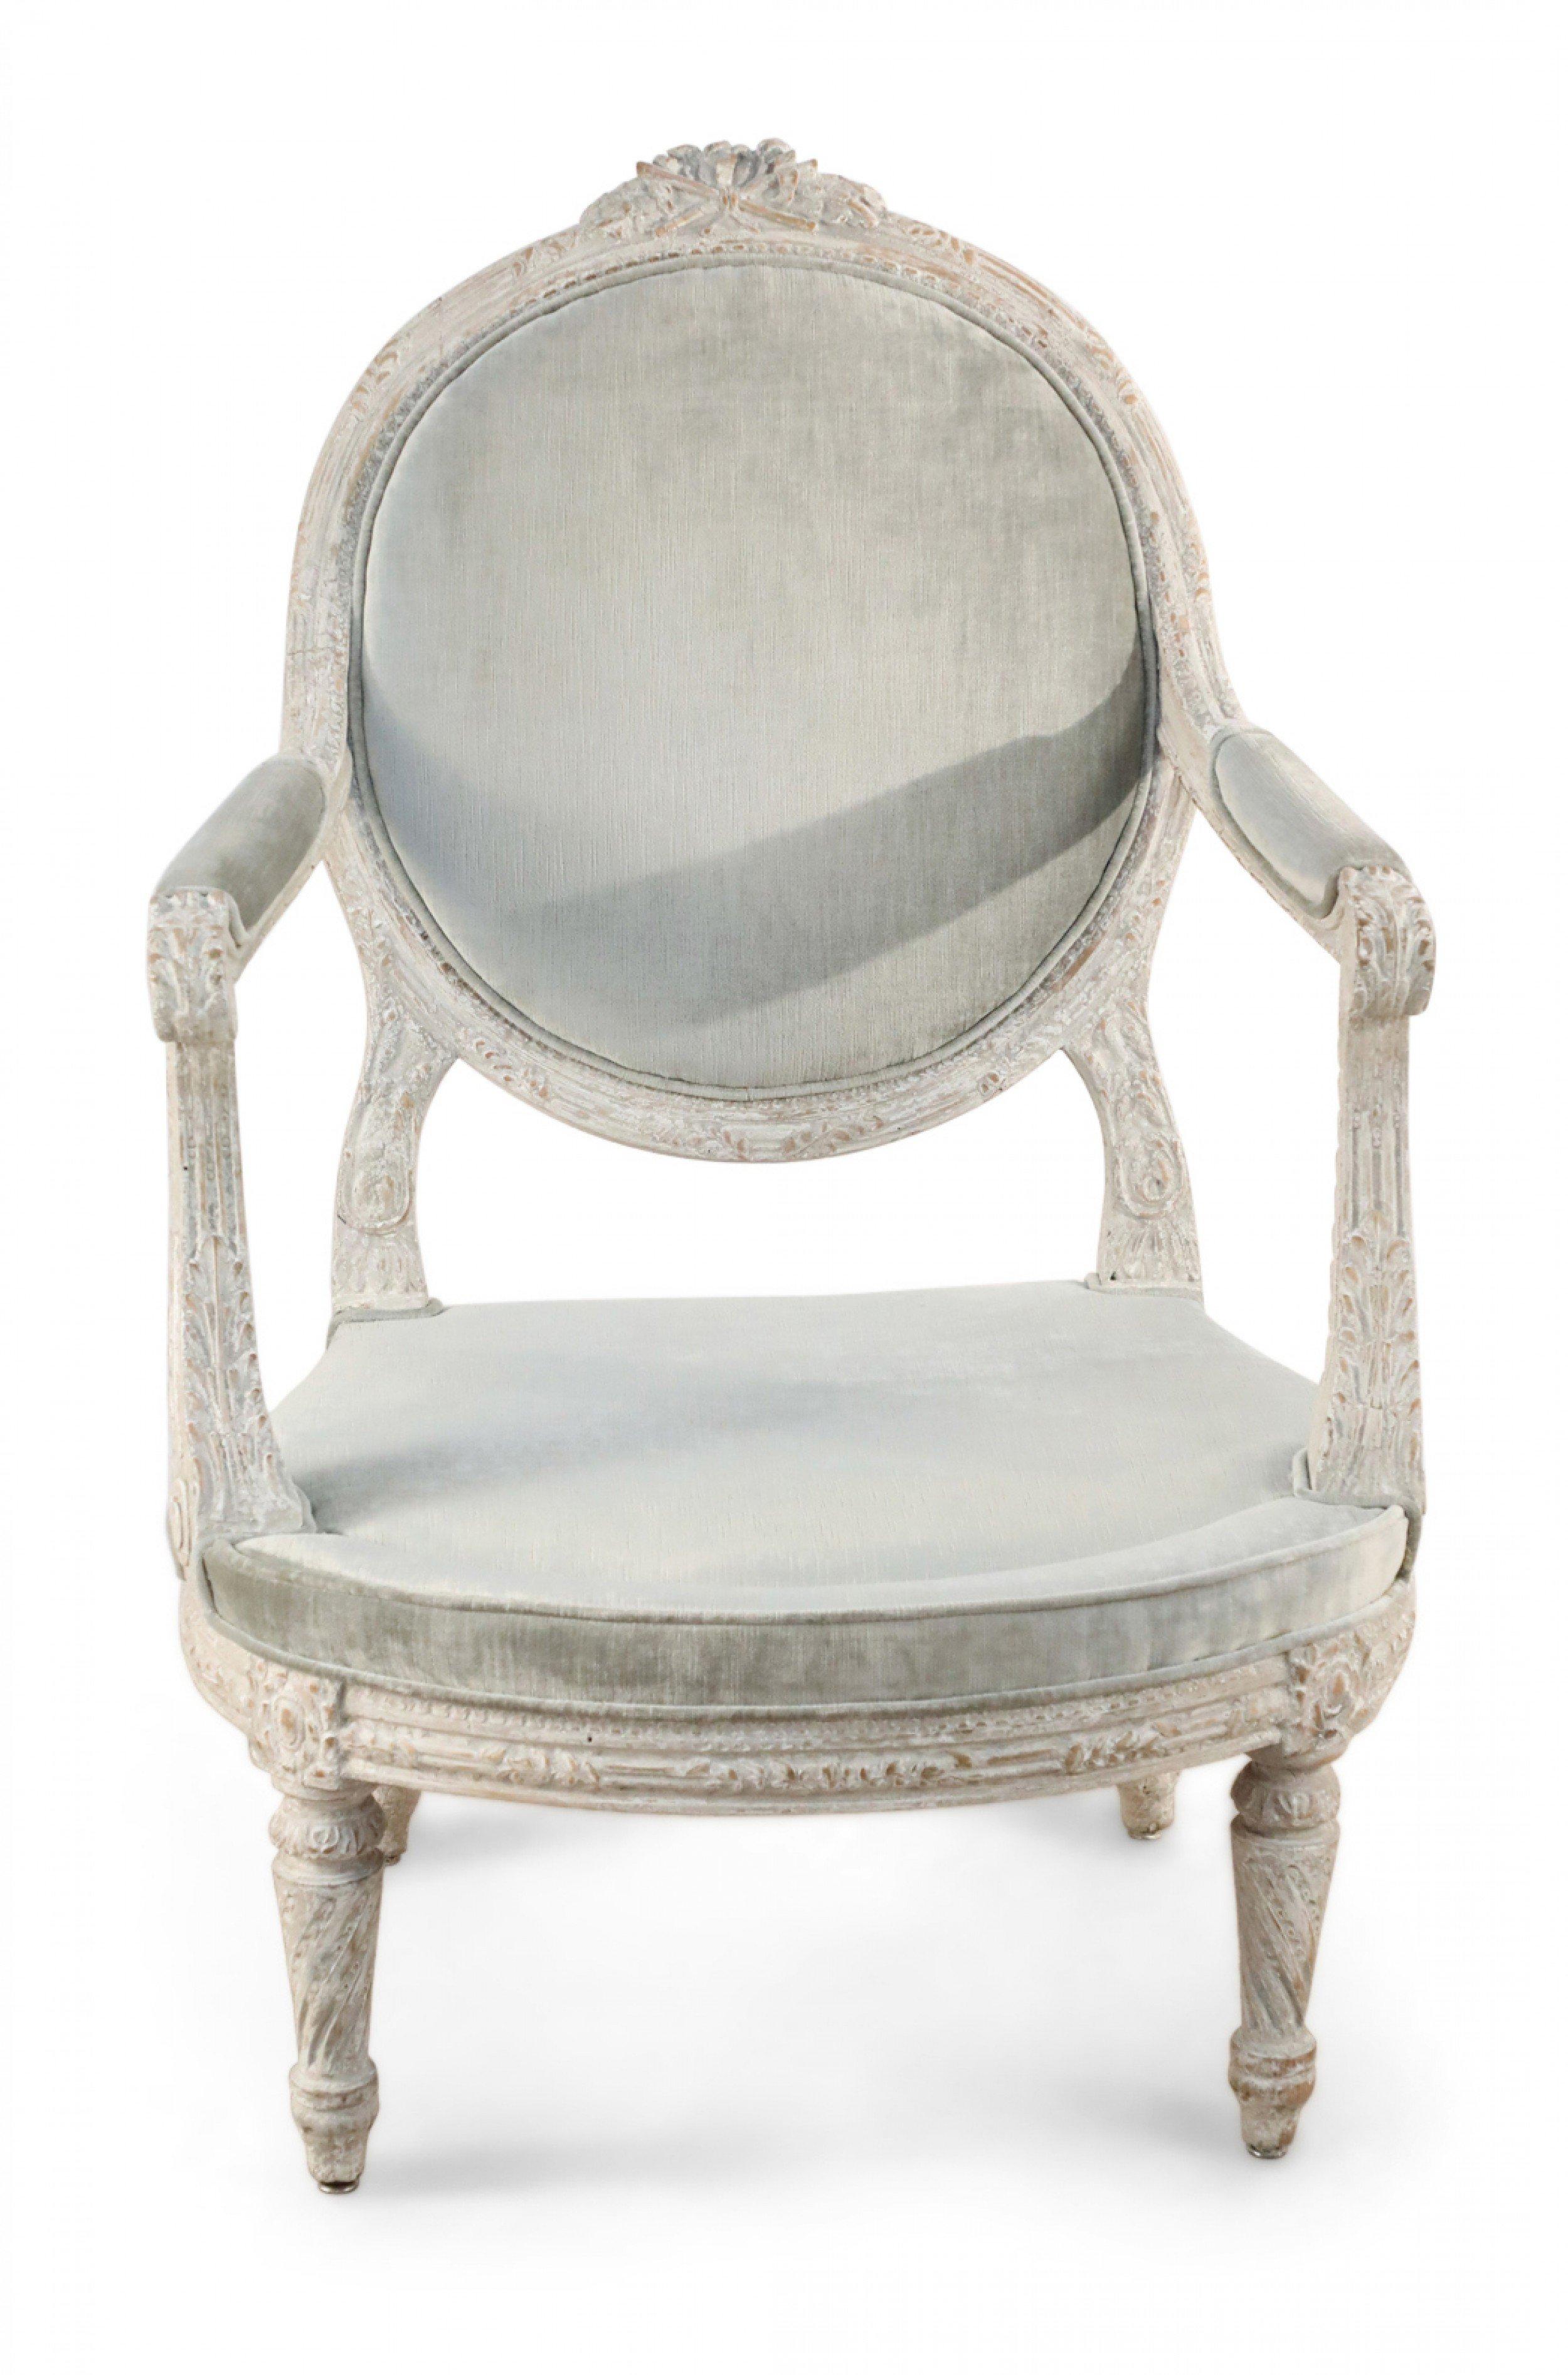 Paire de chaises piémontaises (vers 1785) à accoudoir ouvert, à dossier arrondi avec une crête florale sculptée, le cadre sculpté de blé, et les pieds à cannelures torsadées, avec une tapisserie en velours gris clair. (PRIX PAR Paire)
